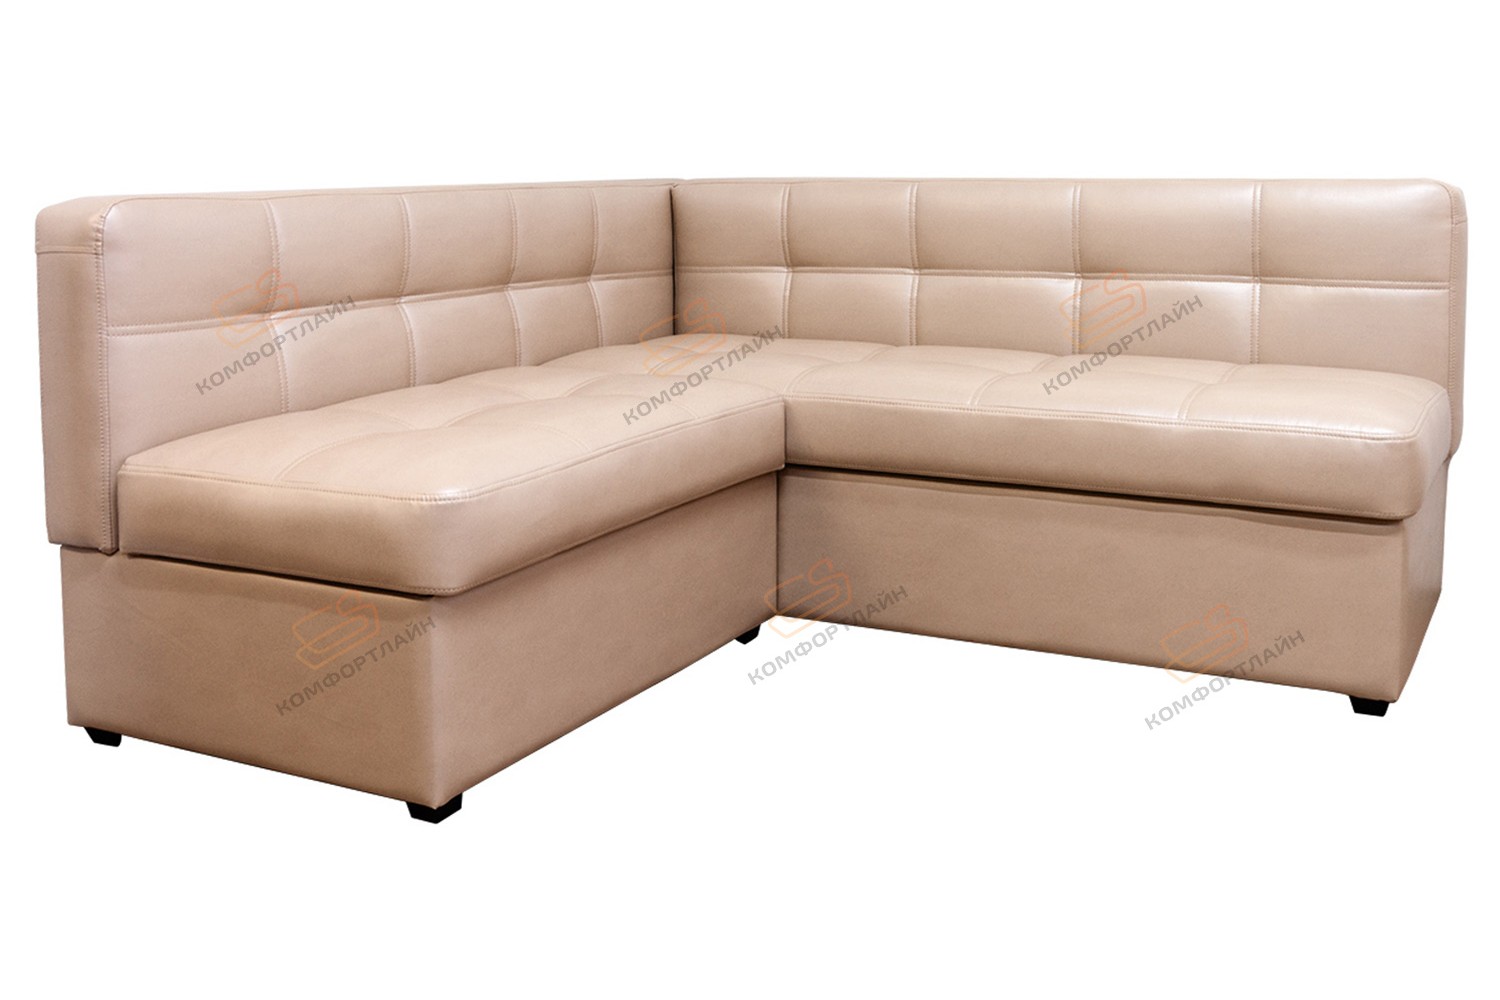 Угловой диван для кухни Палермо Софт с раскладушкой ДПСМТ11 бежевый –купить в Москве по цене 51 300 руб. в интернет-магазине мебели Аната-Мебель